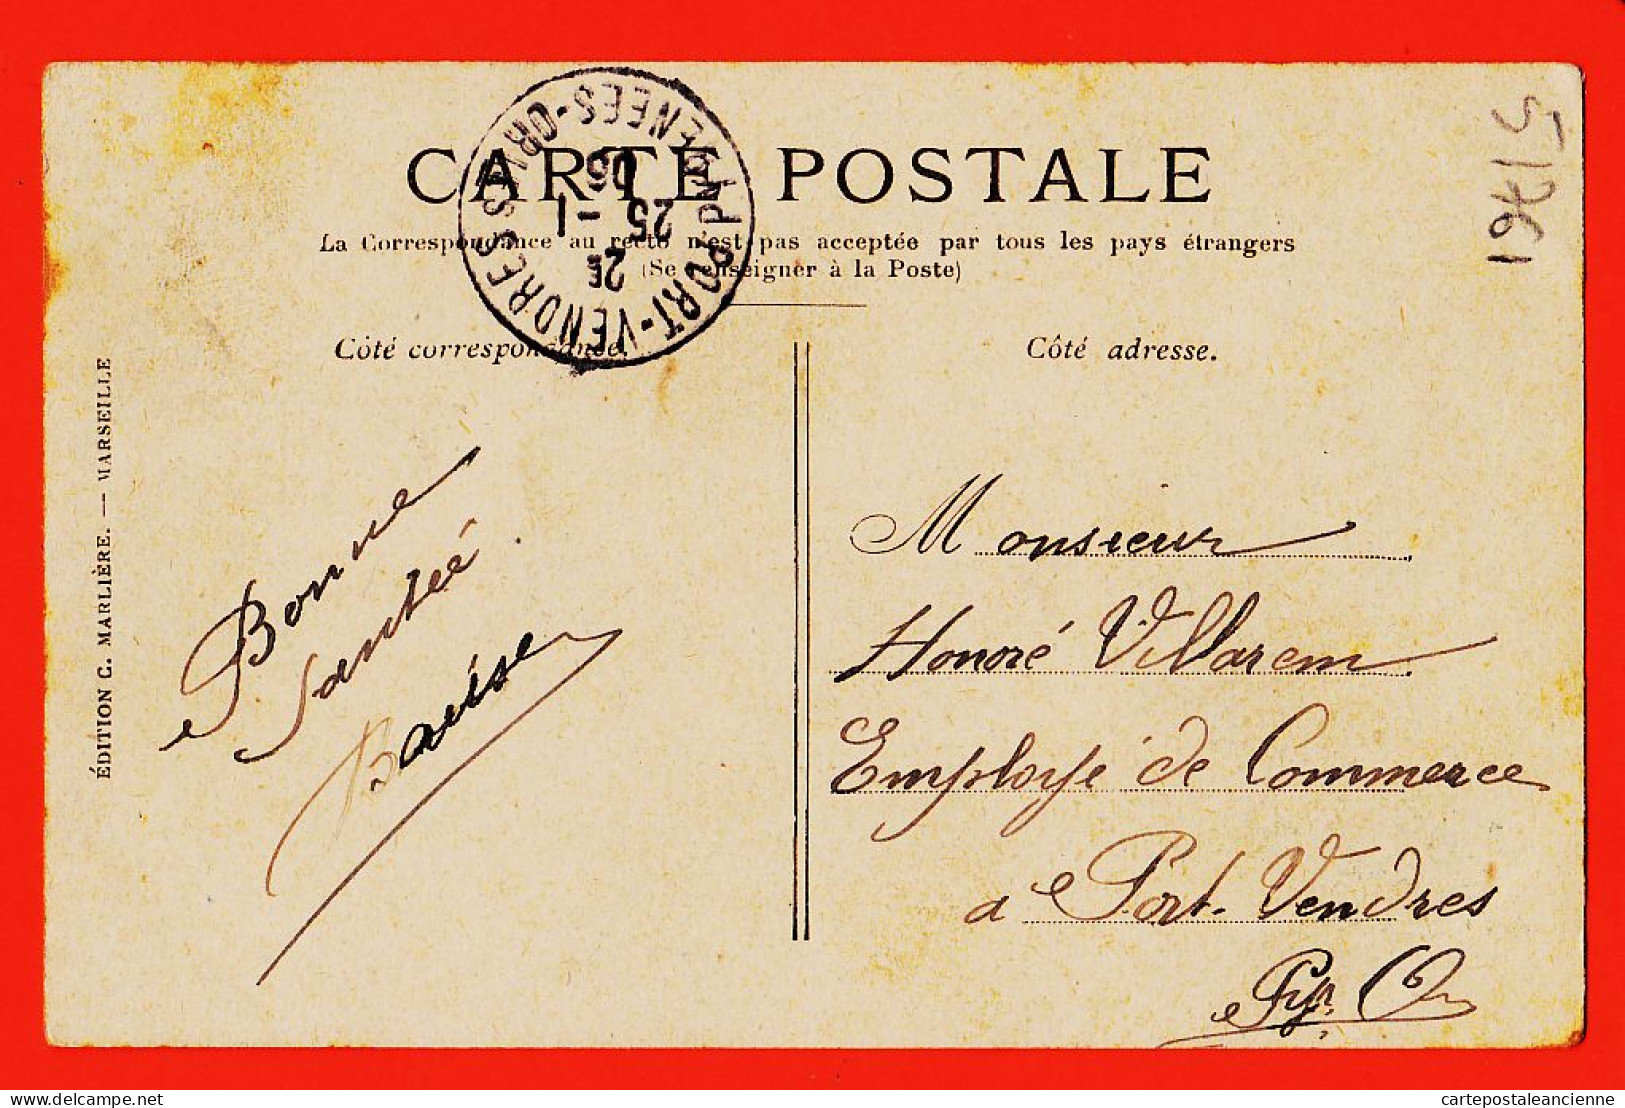 10761 ● MARSEILLE (13) Le Quai De La FRATERNITE  1905 à Honoré VILLAREM  Port-Vendres  MARLIERE N° 5 - Joliette